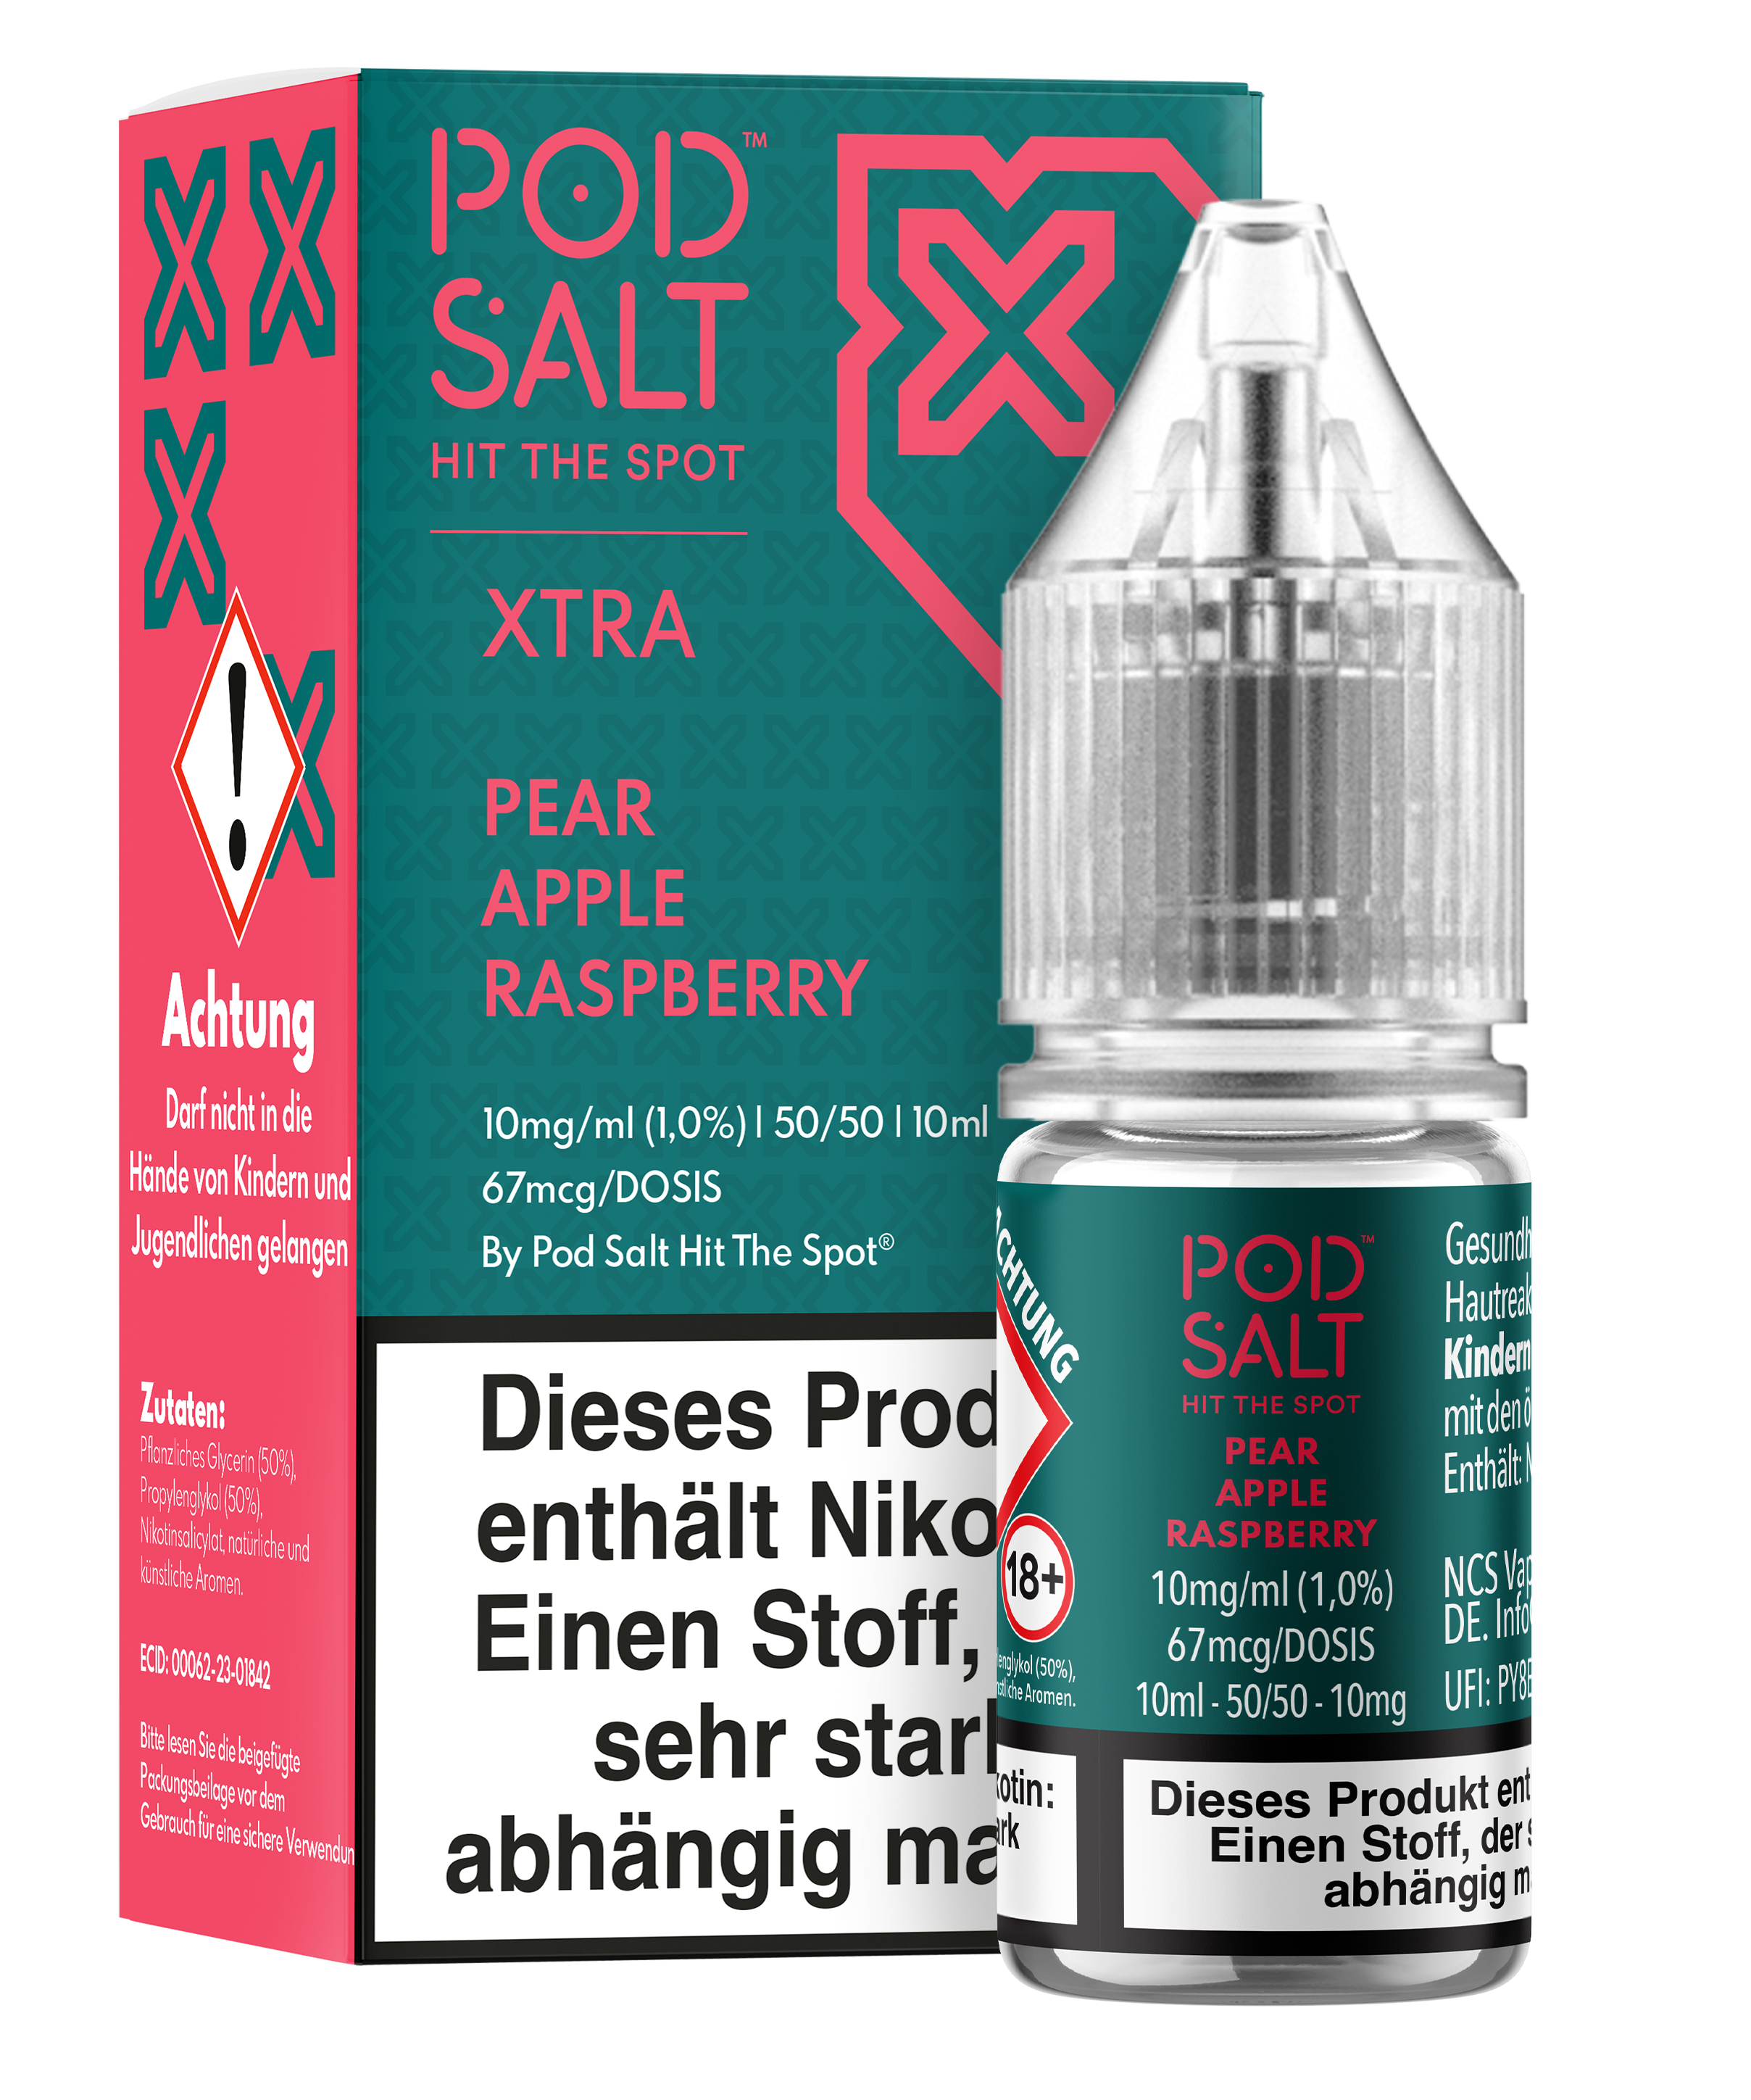 Pod Salt Xtra - Pear Apple Raspberry 10 ml